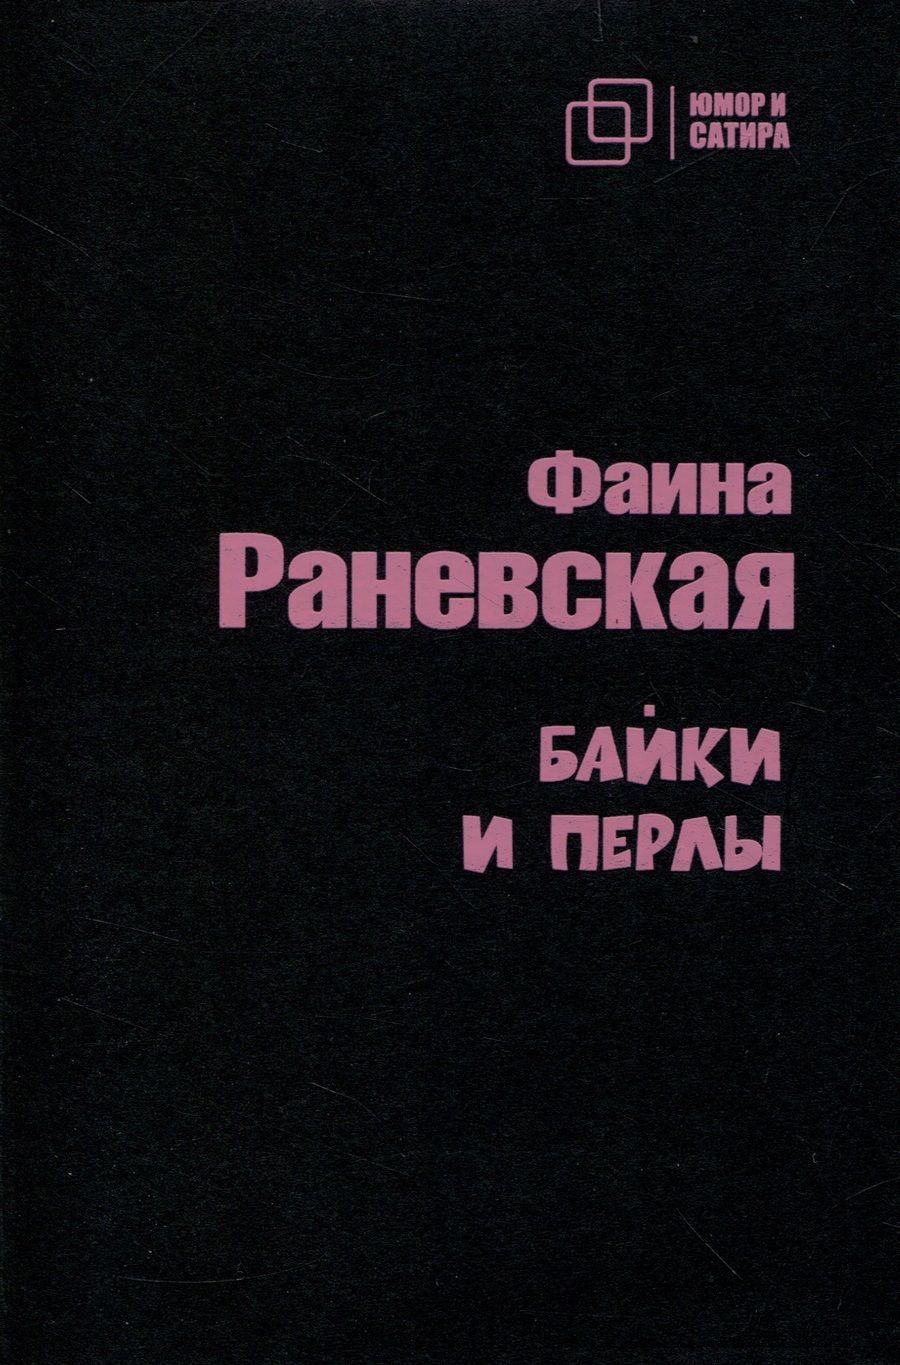 Обложка книги "Раневская: Байки и перлы"